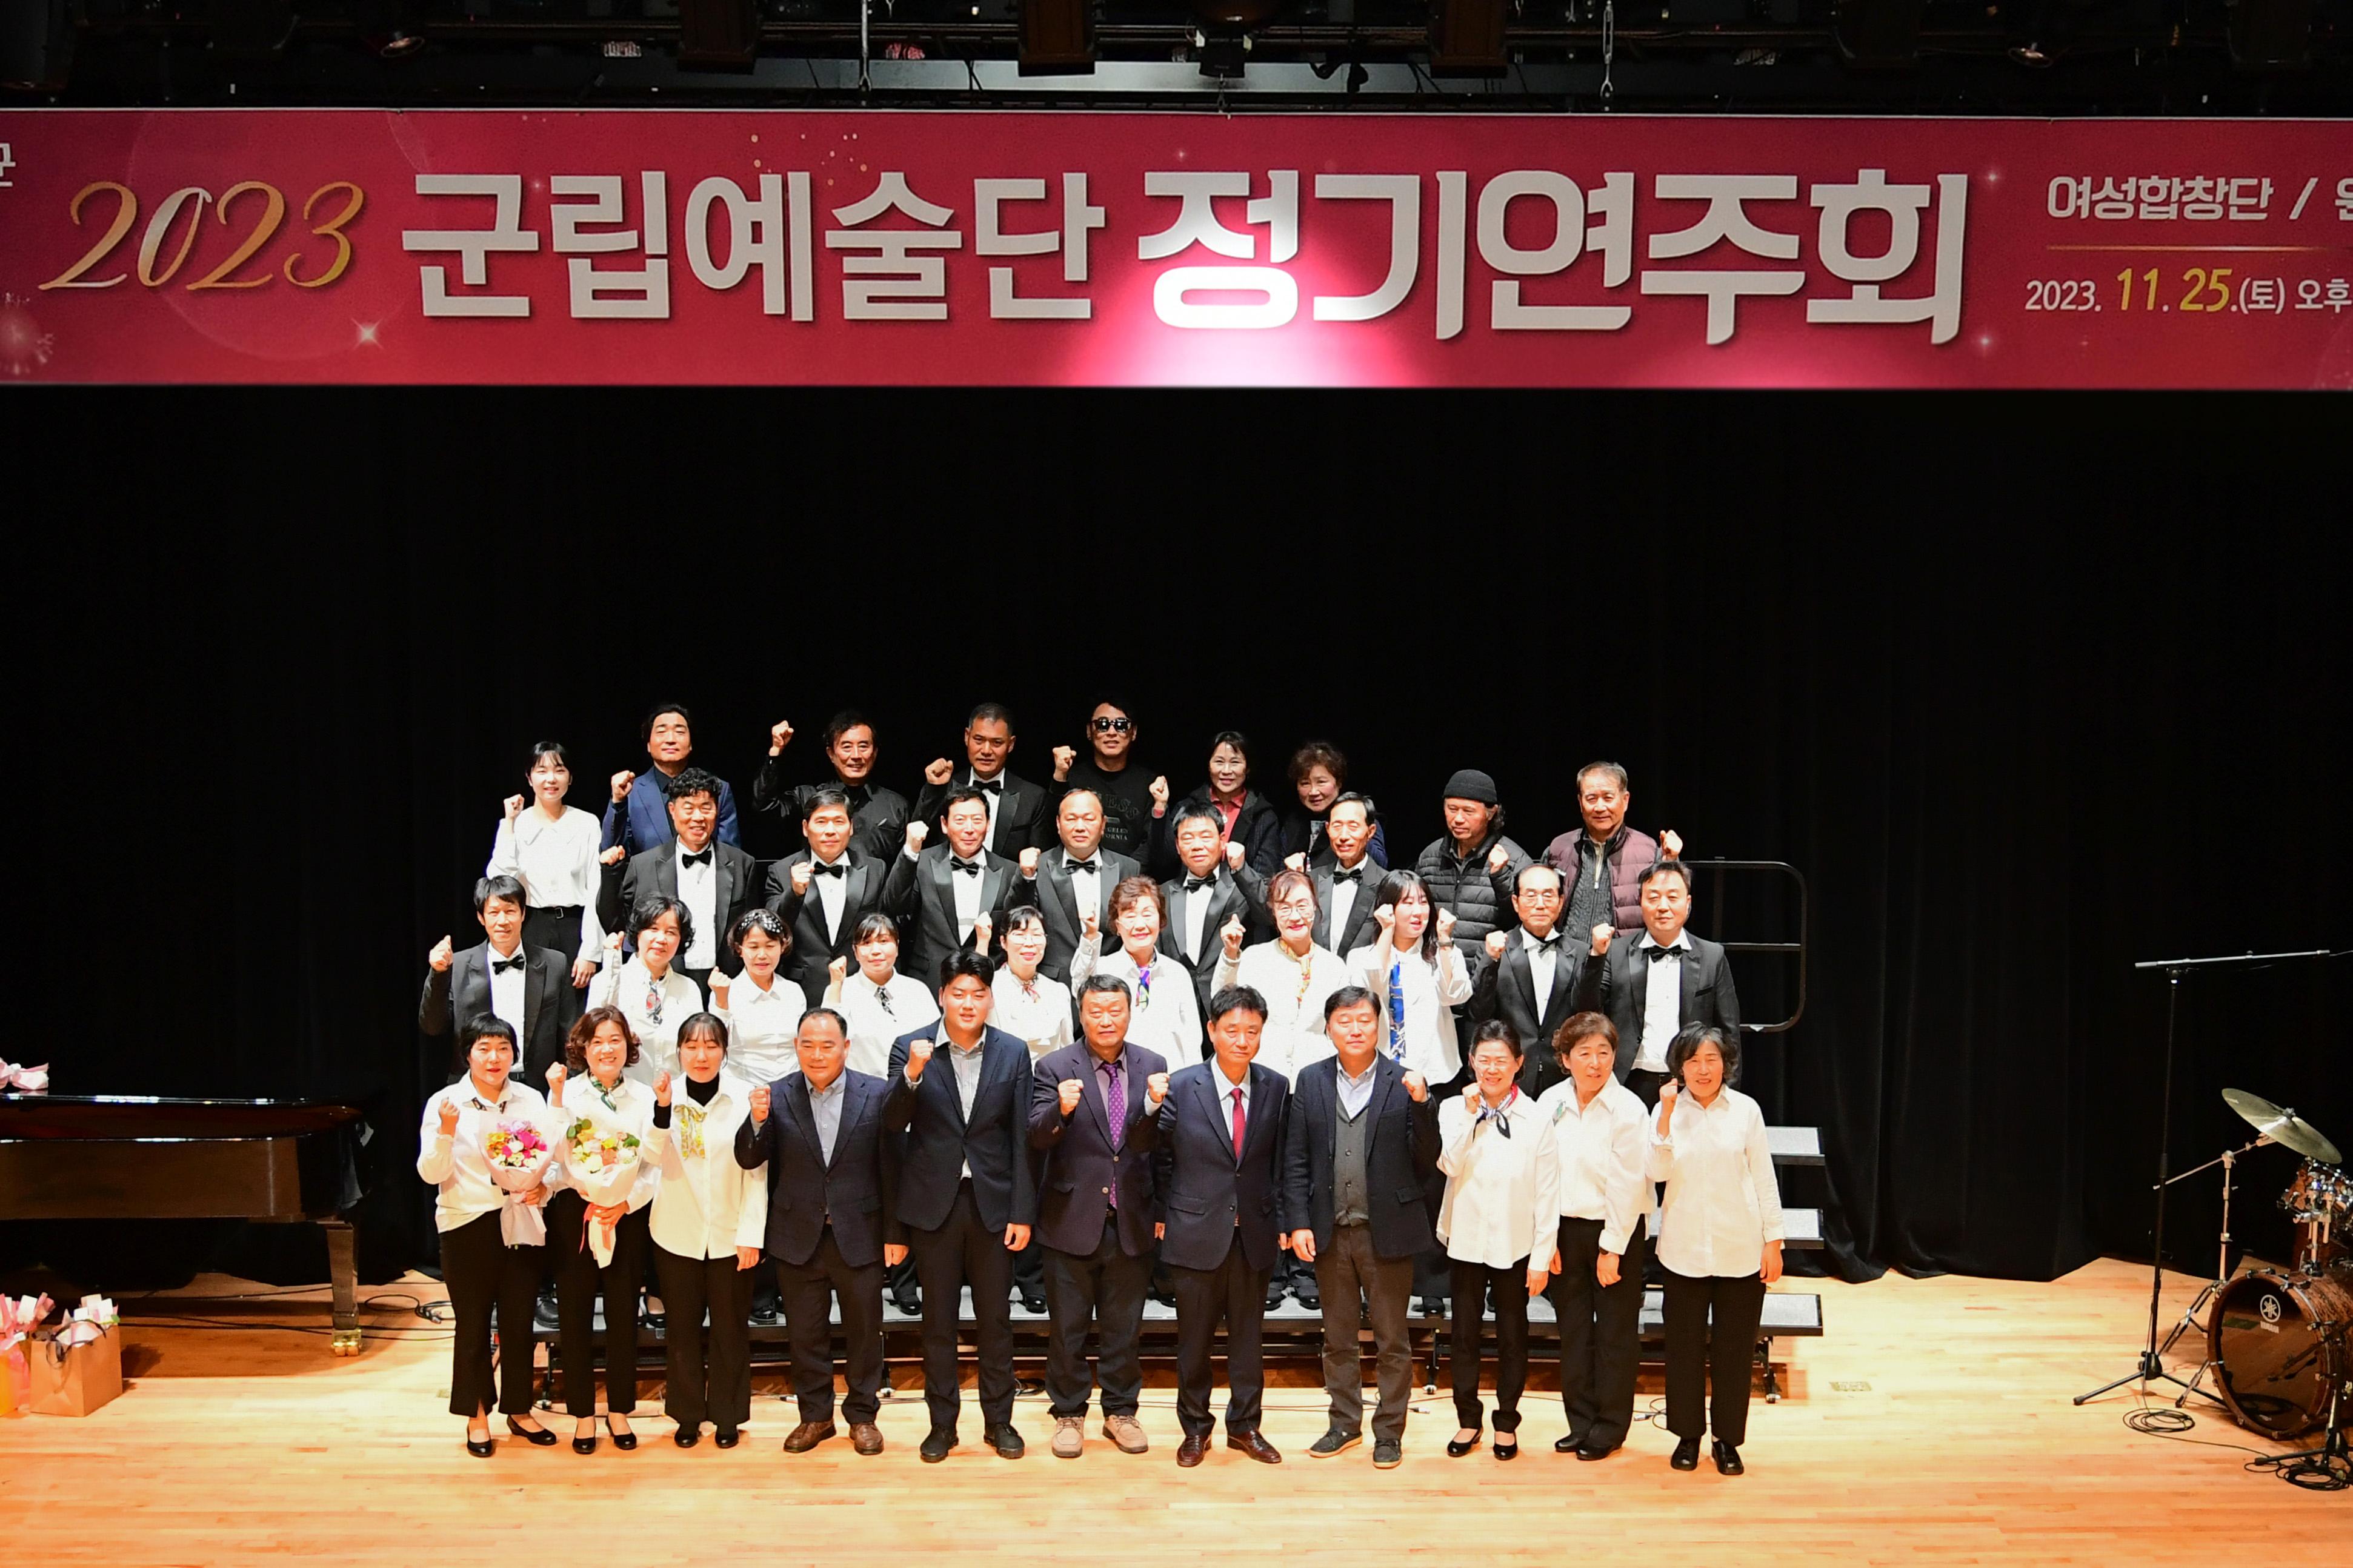 2023 군립예술단 정기연주회 의 사진